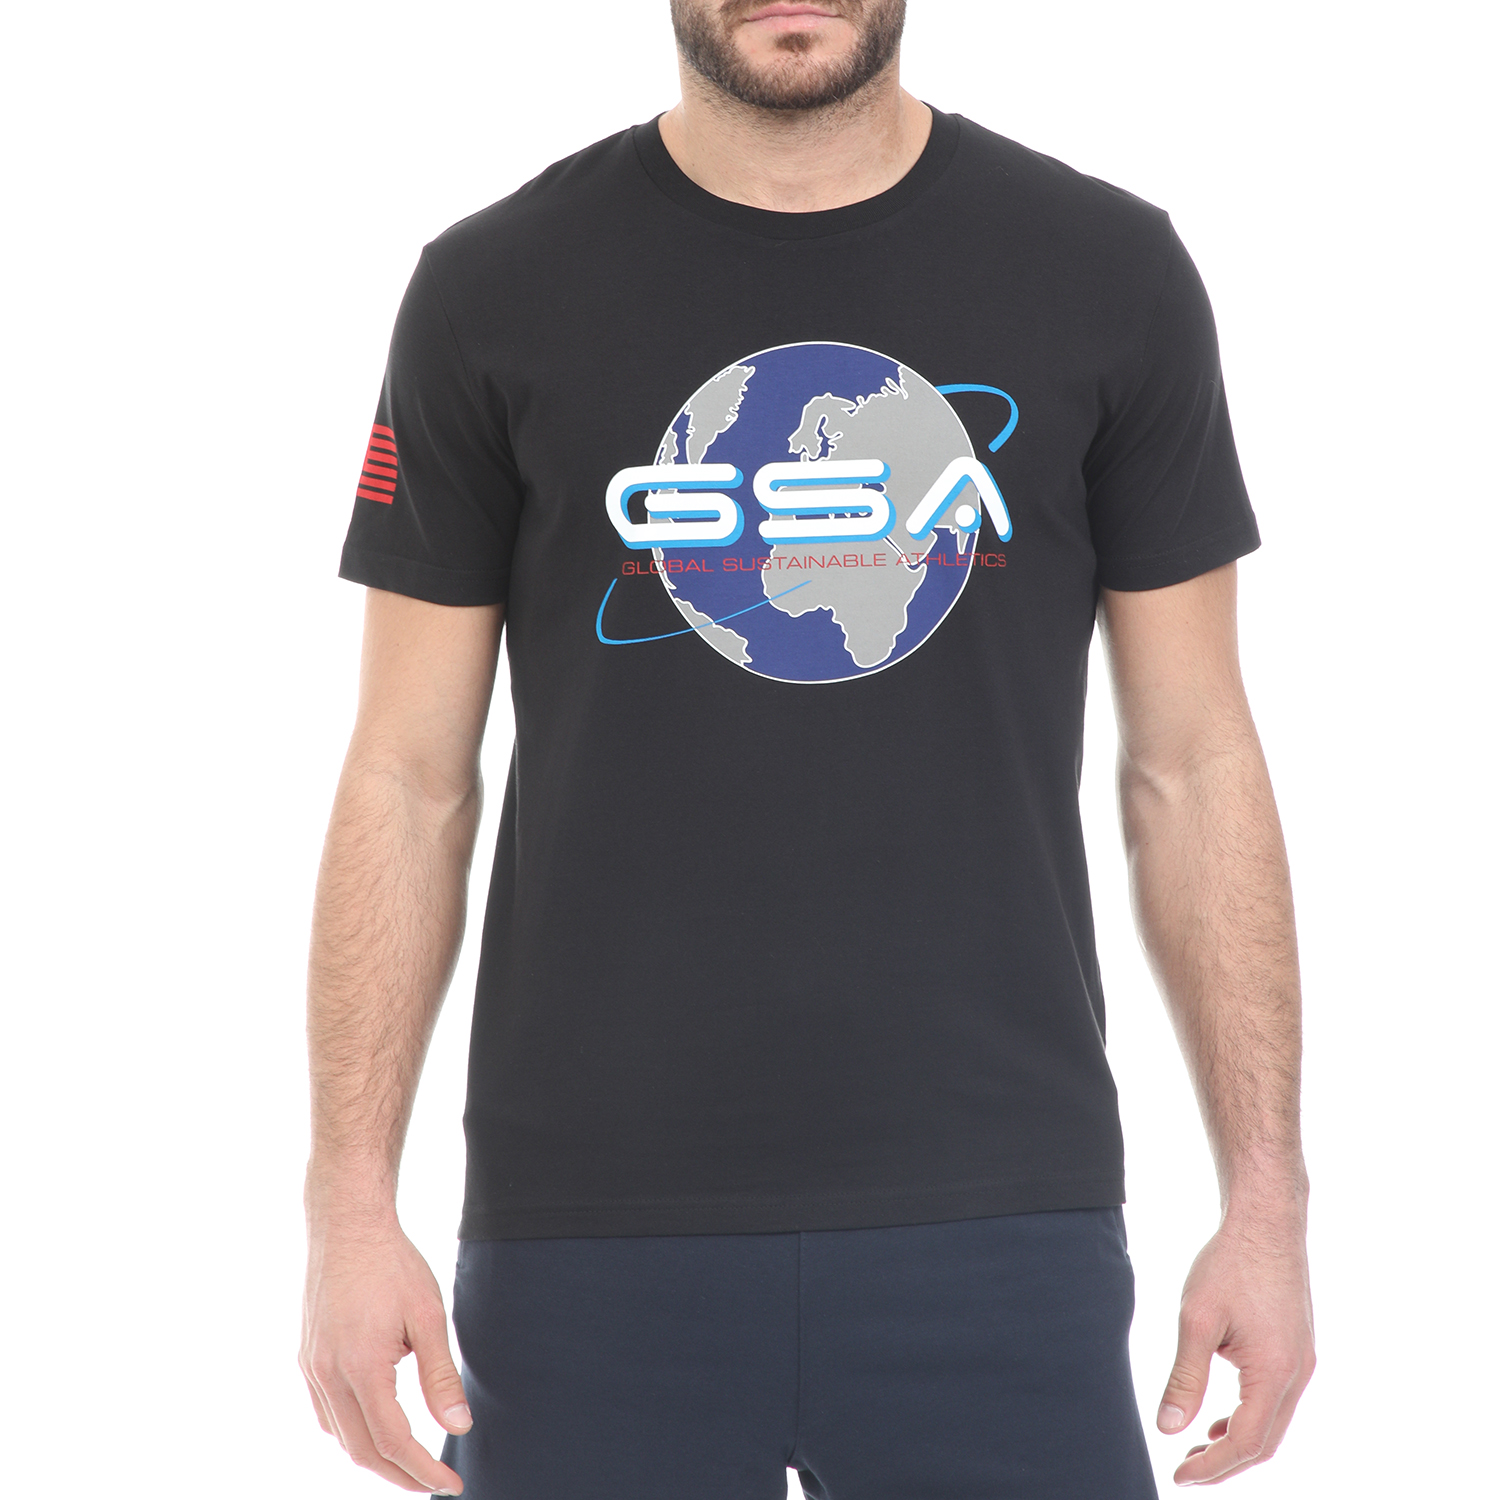 Ανδρικά/Ρούχα/Μπλούζες/Κοντομάνικες GSA - Ανδρικό t-shirt GSA ORGANIC PLUS EARTH TEE μαύρο